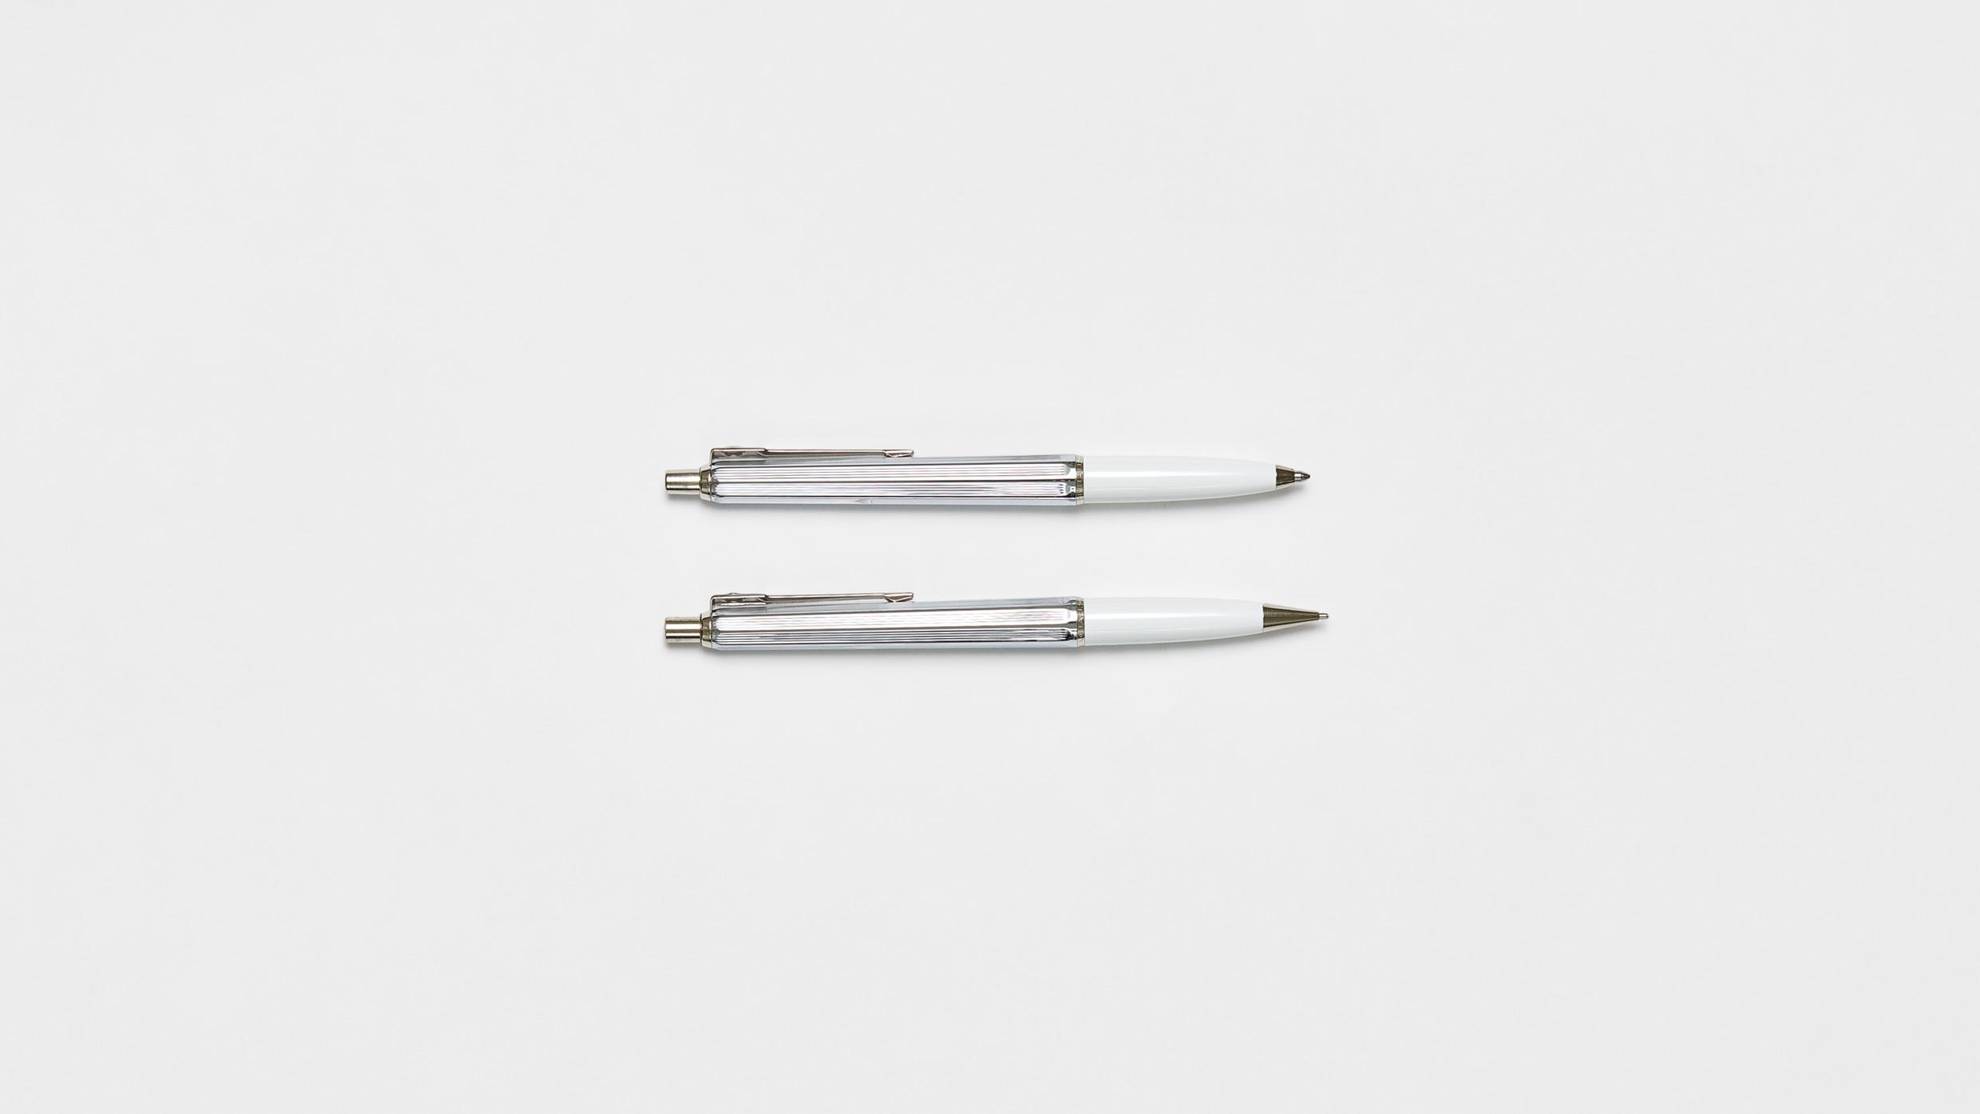 Zwei Stifte von Ballograf auf einer weißen Fläche.